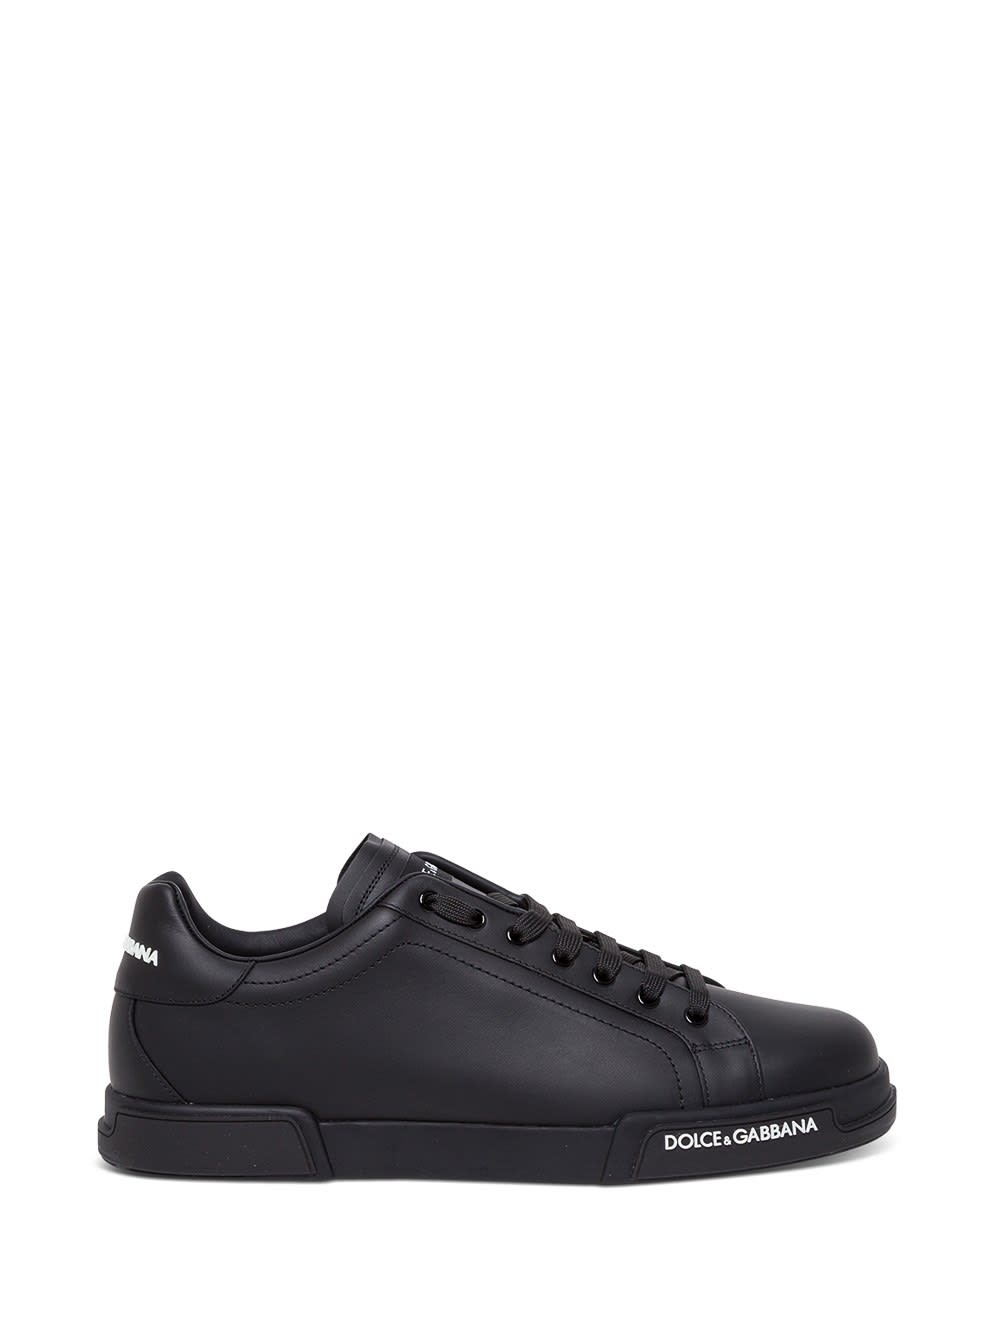 Dolce & Gabbana Portofino Black Leather Sneakers